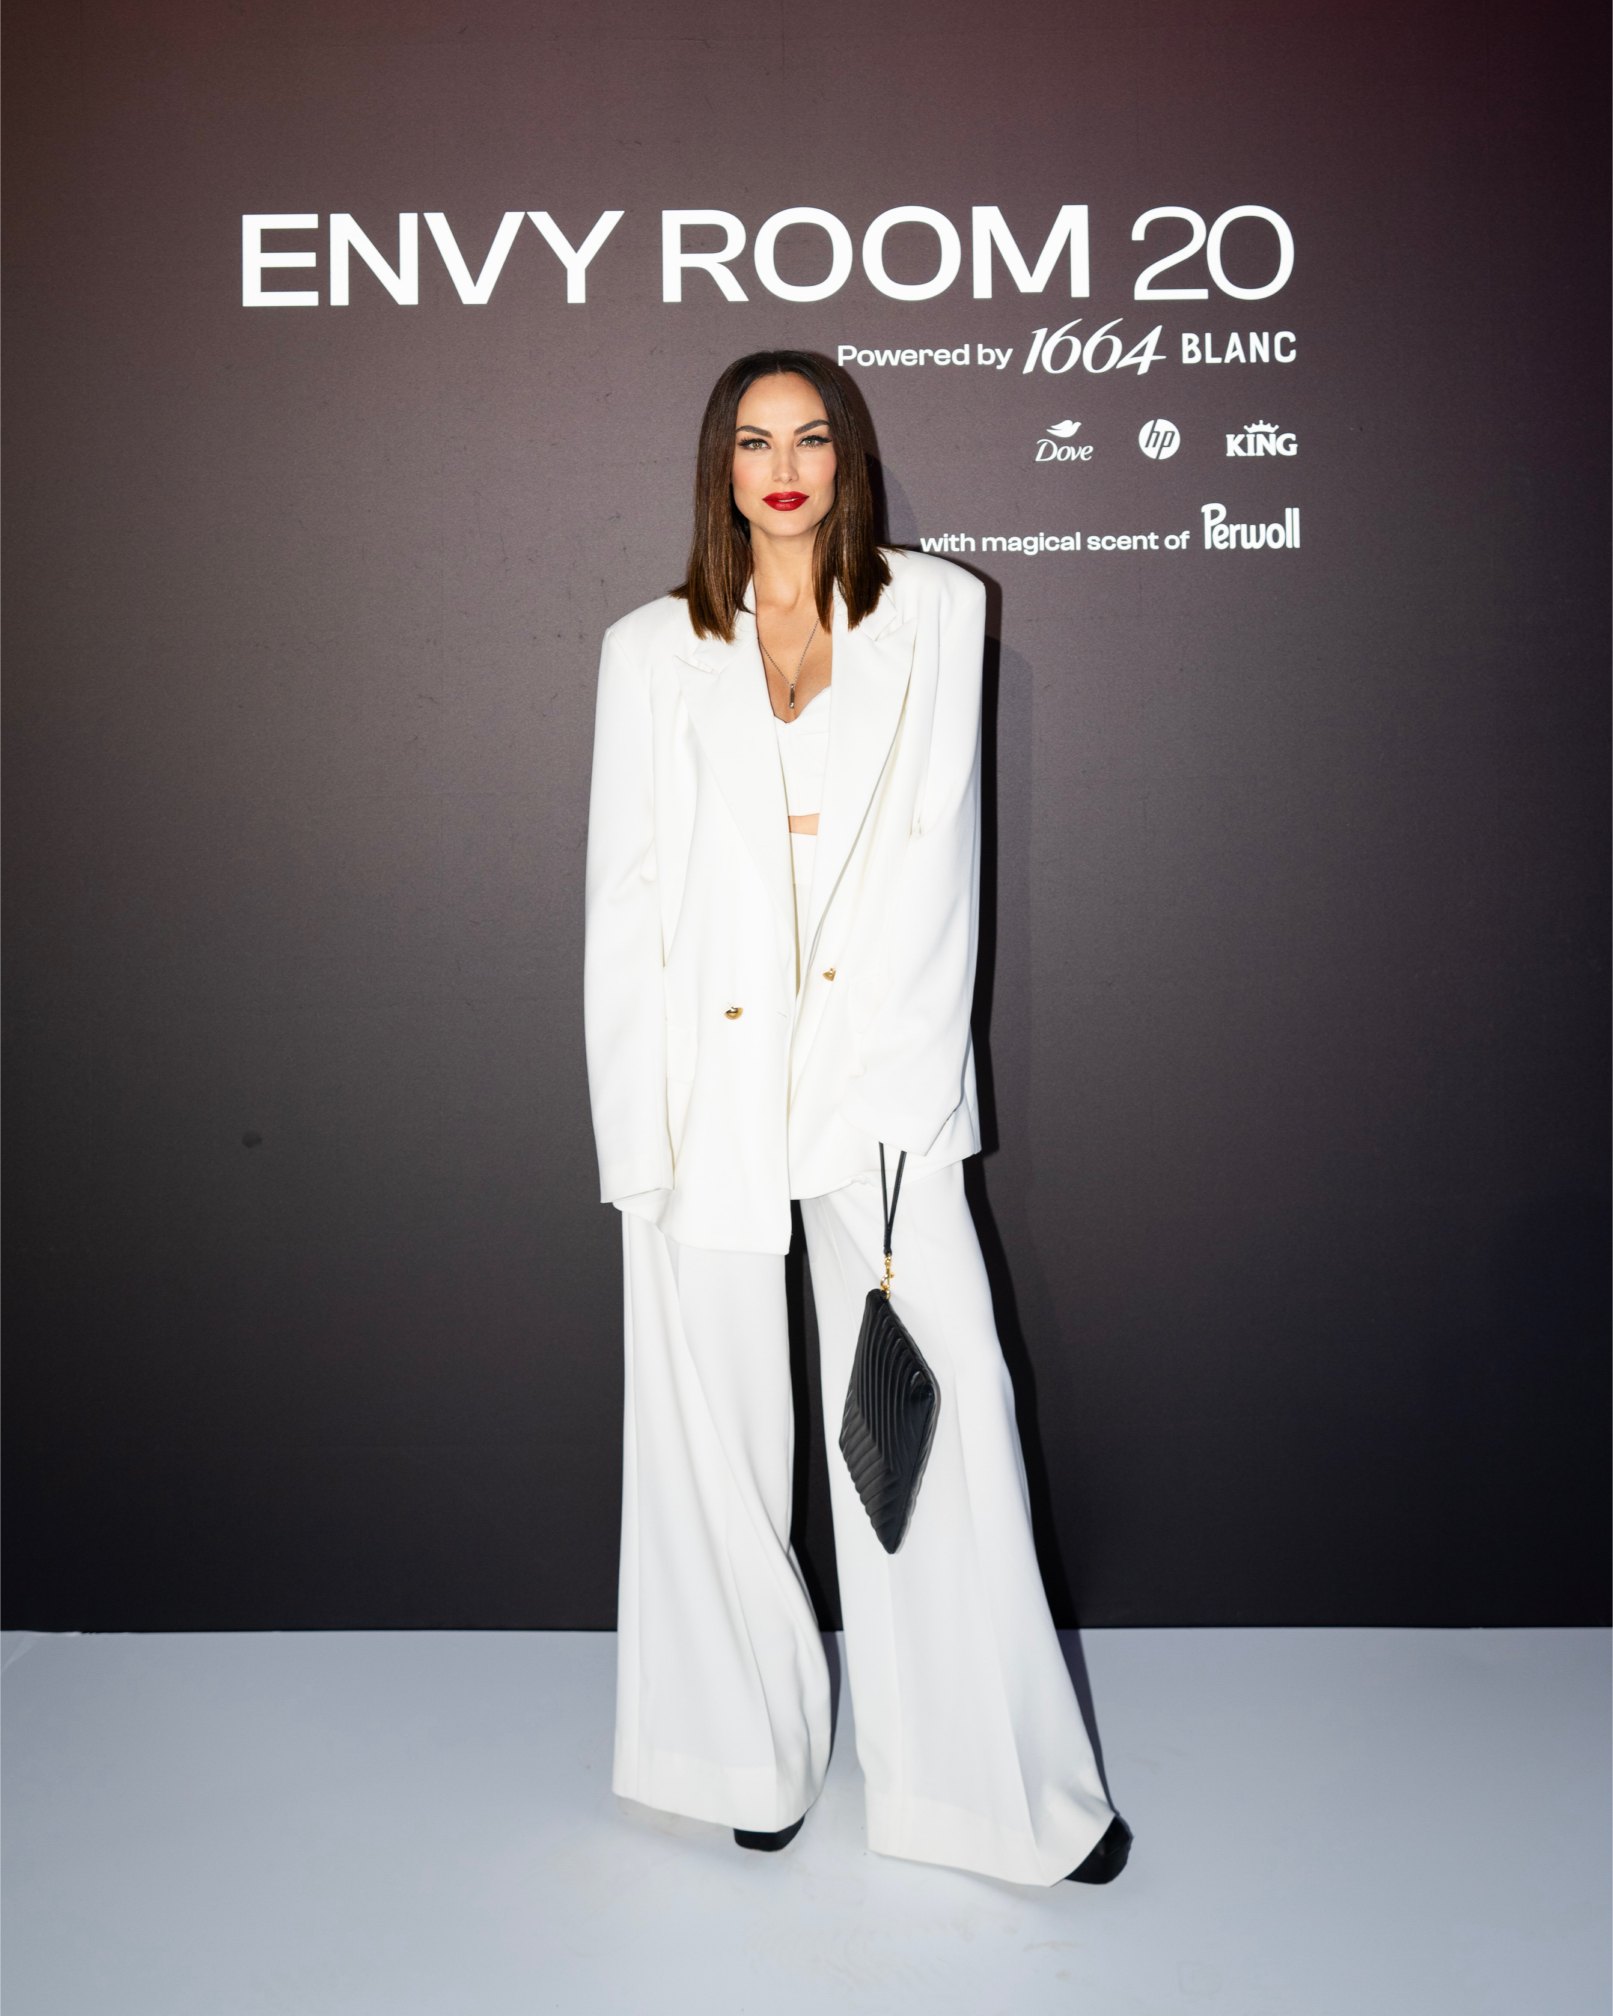 Spektakularnom slavljeničkom revijom eNVy room je obilježio 20 godina stvaranja